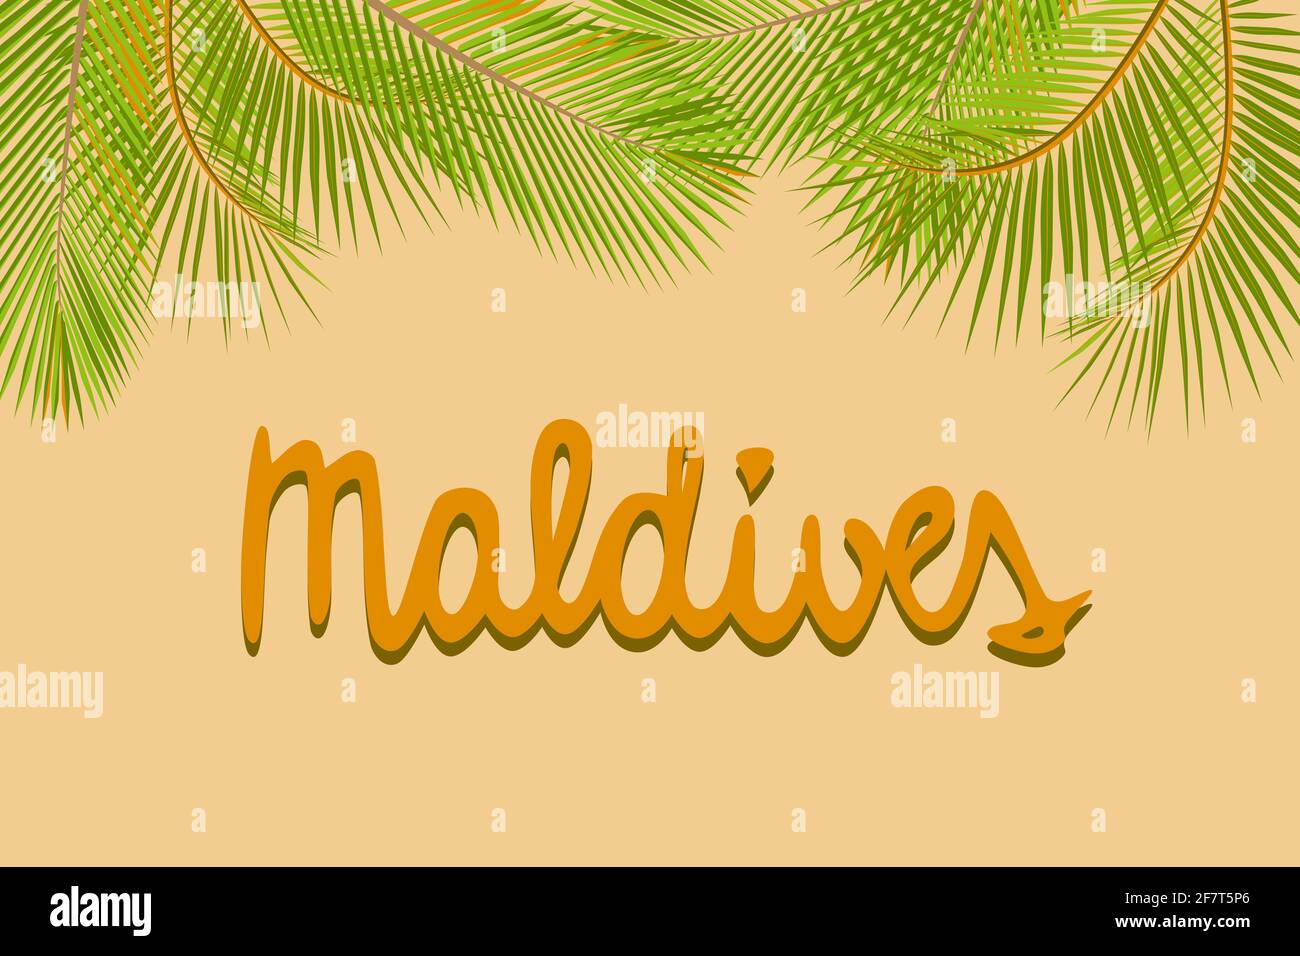 Texte manuscrit des Maldives, fond jaune de feuilles de palmier vertes, modèle de carte de bannière d'affiche, illustration vectorielle Illustration de Vecteur